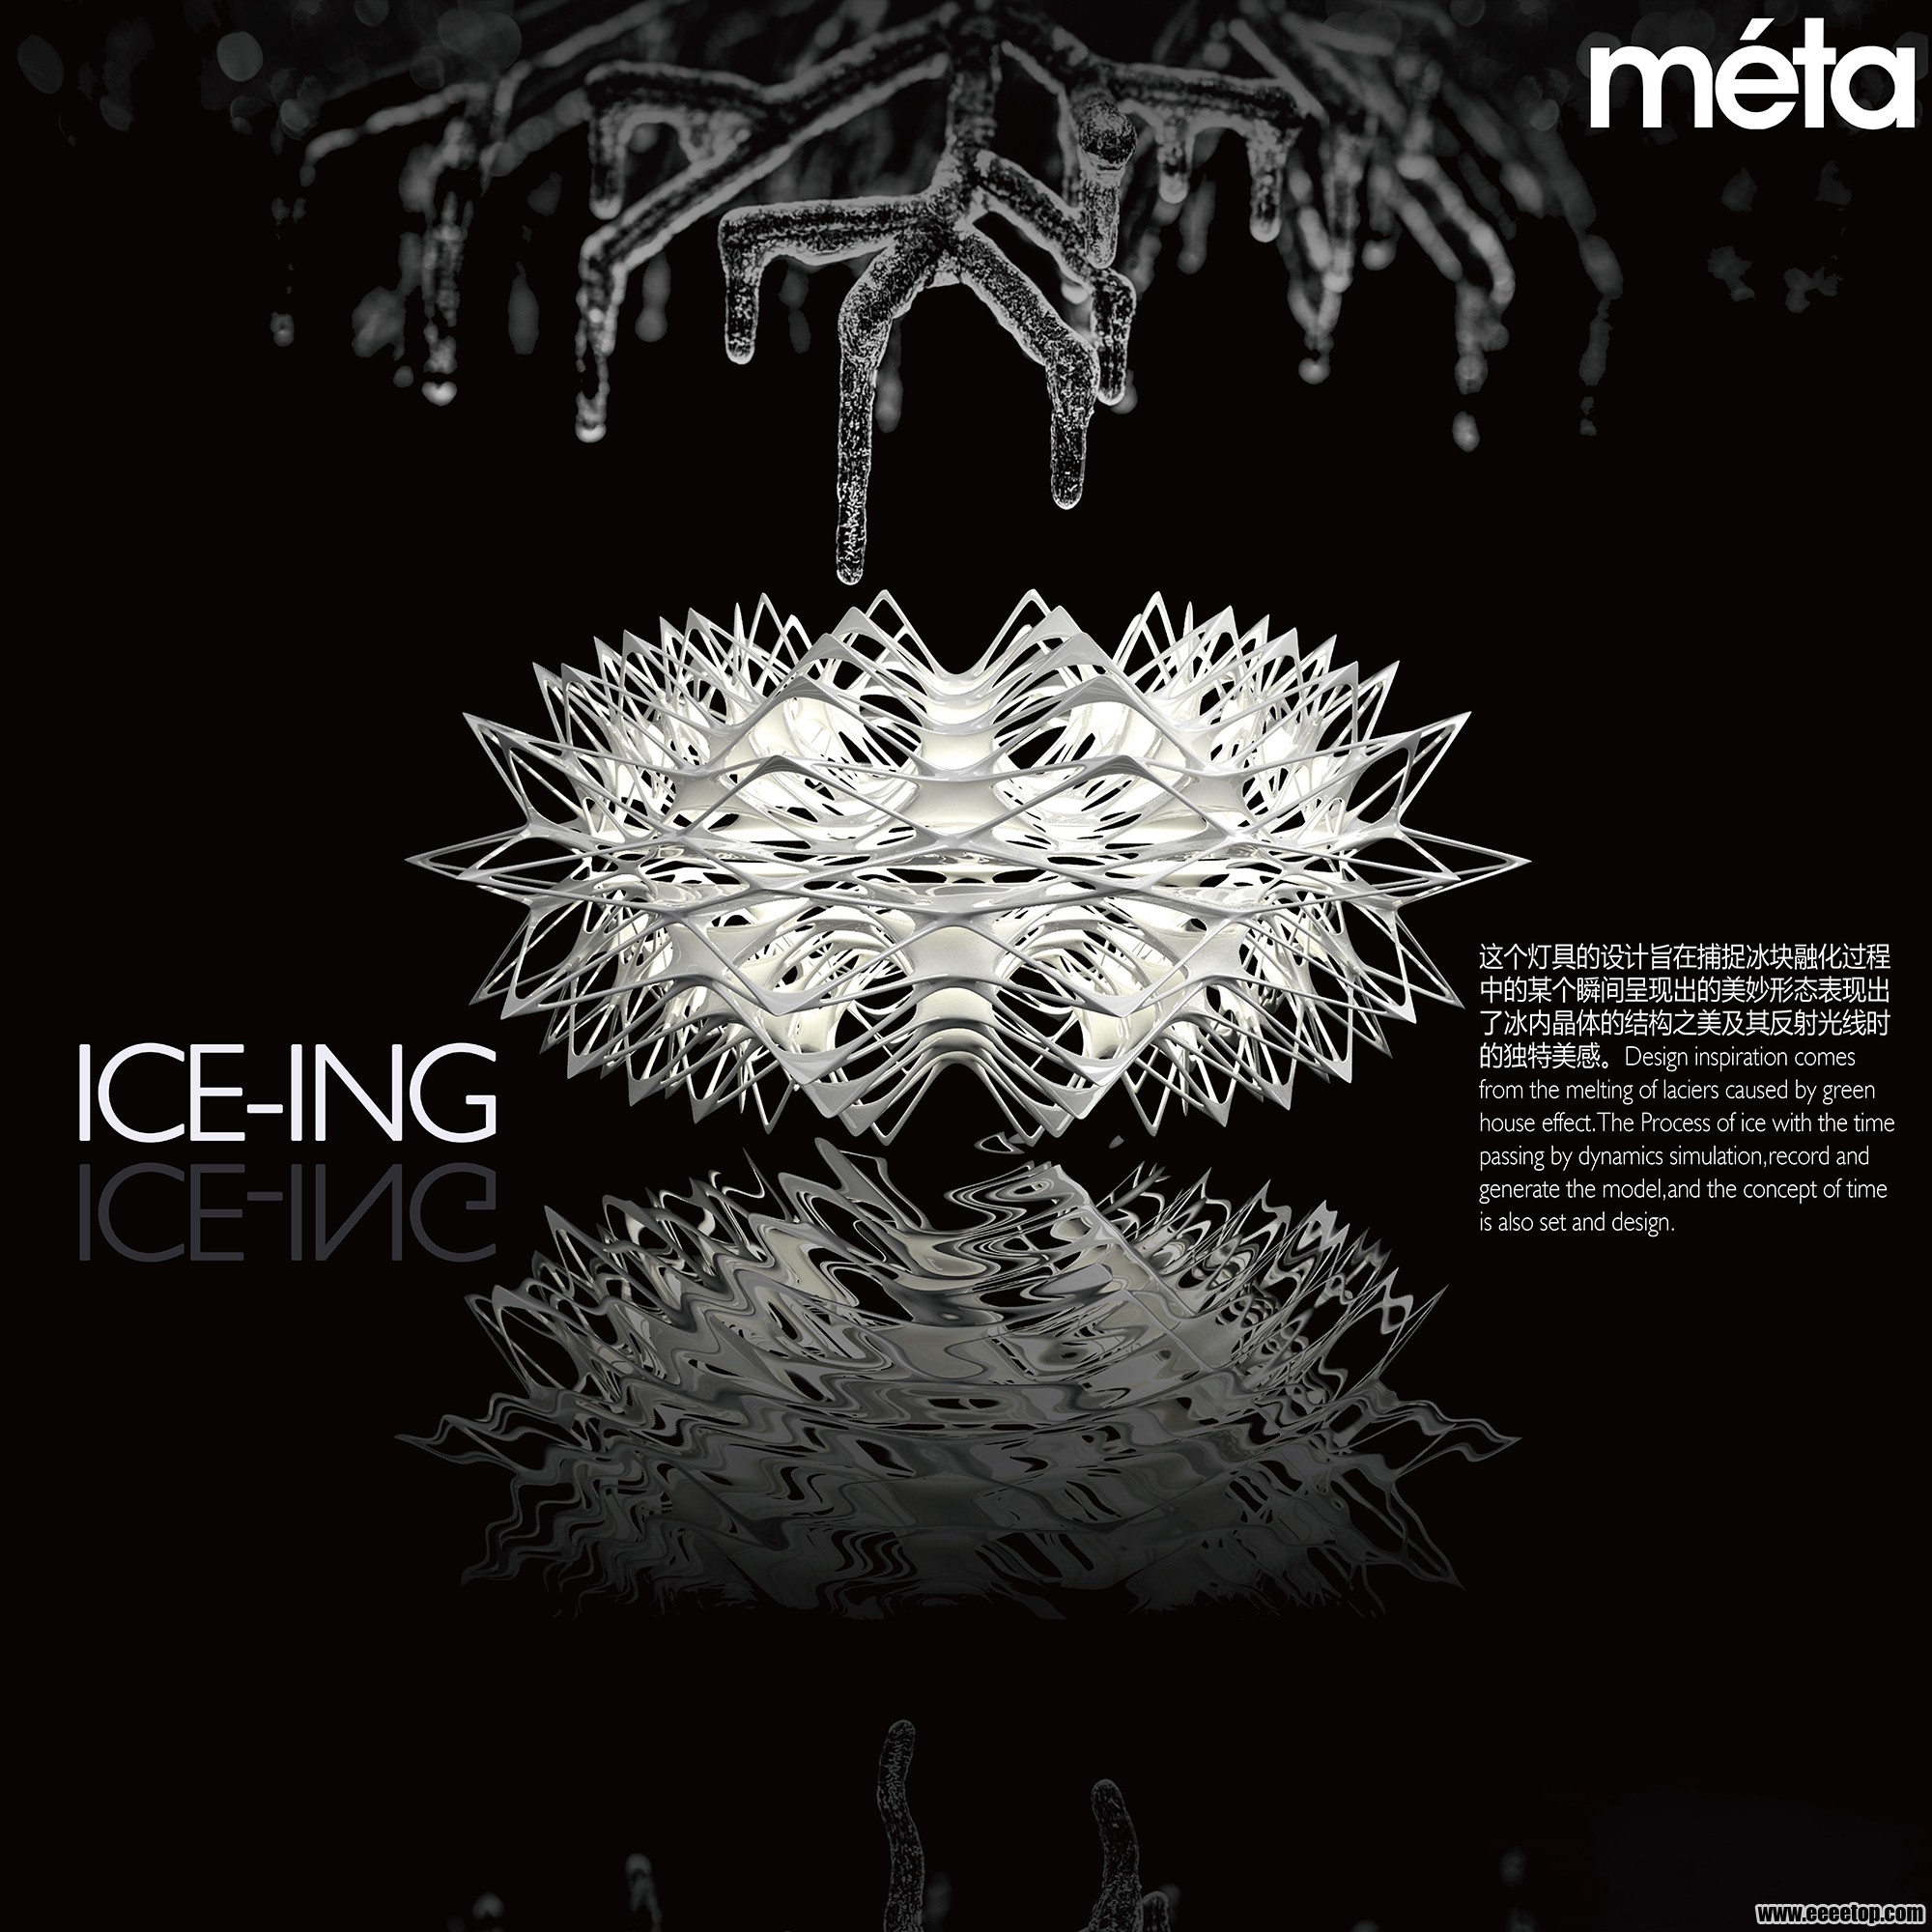 ice-ing lamp-01 2-01.jpg